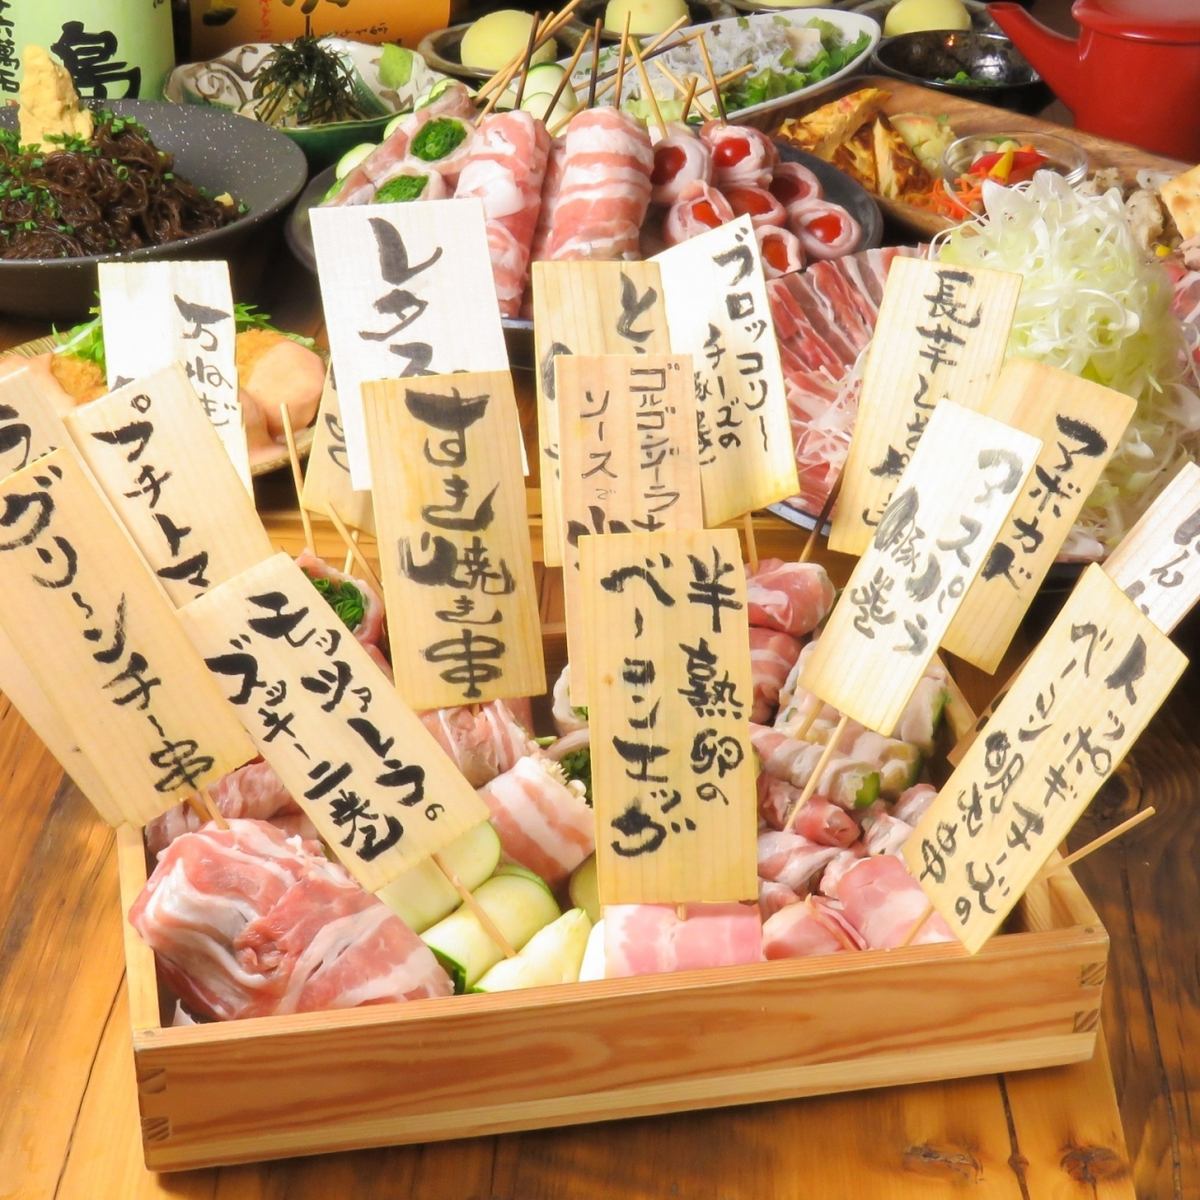 Popular shop ♪ vegetables winding sushi shop !!